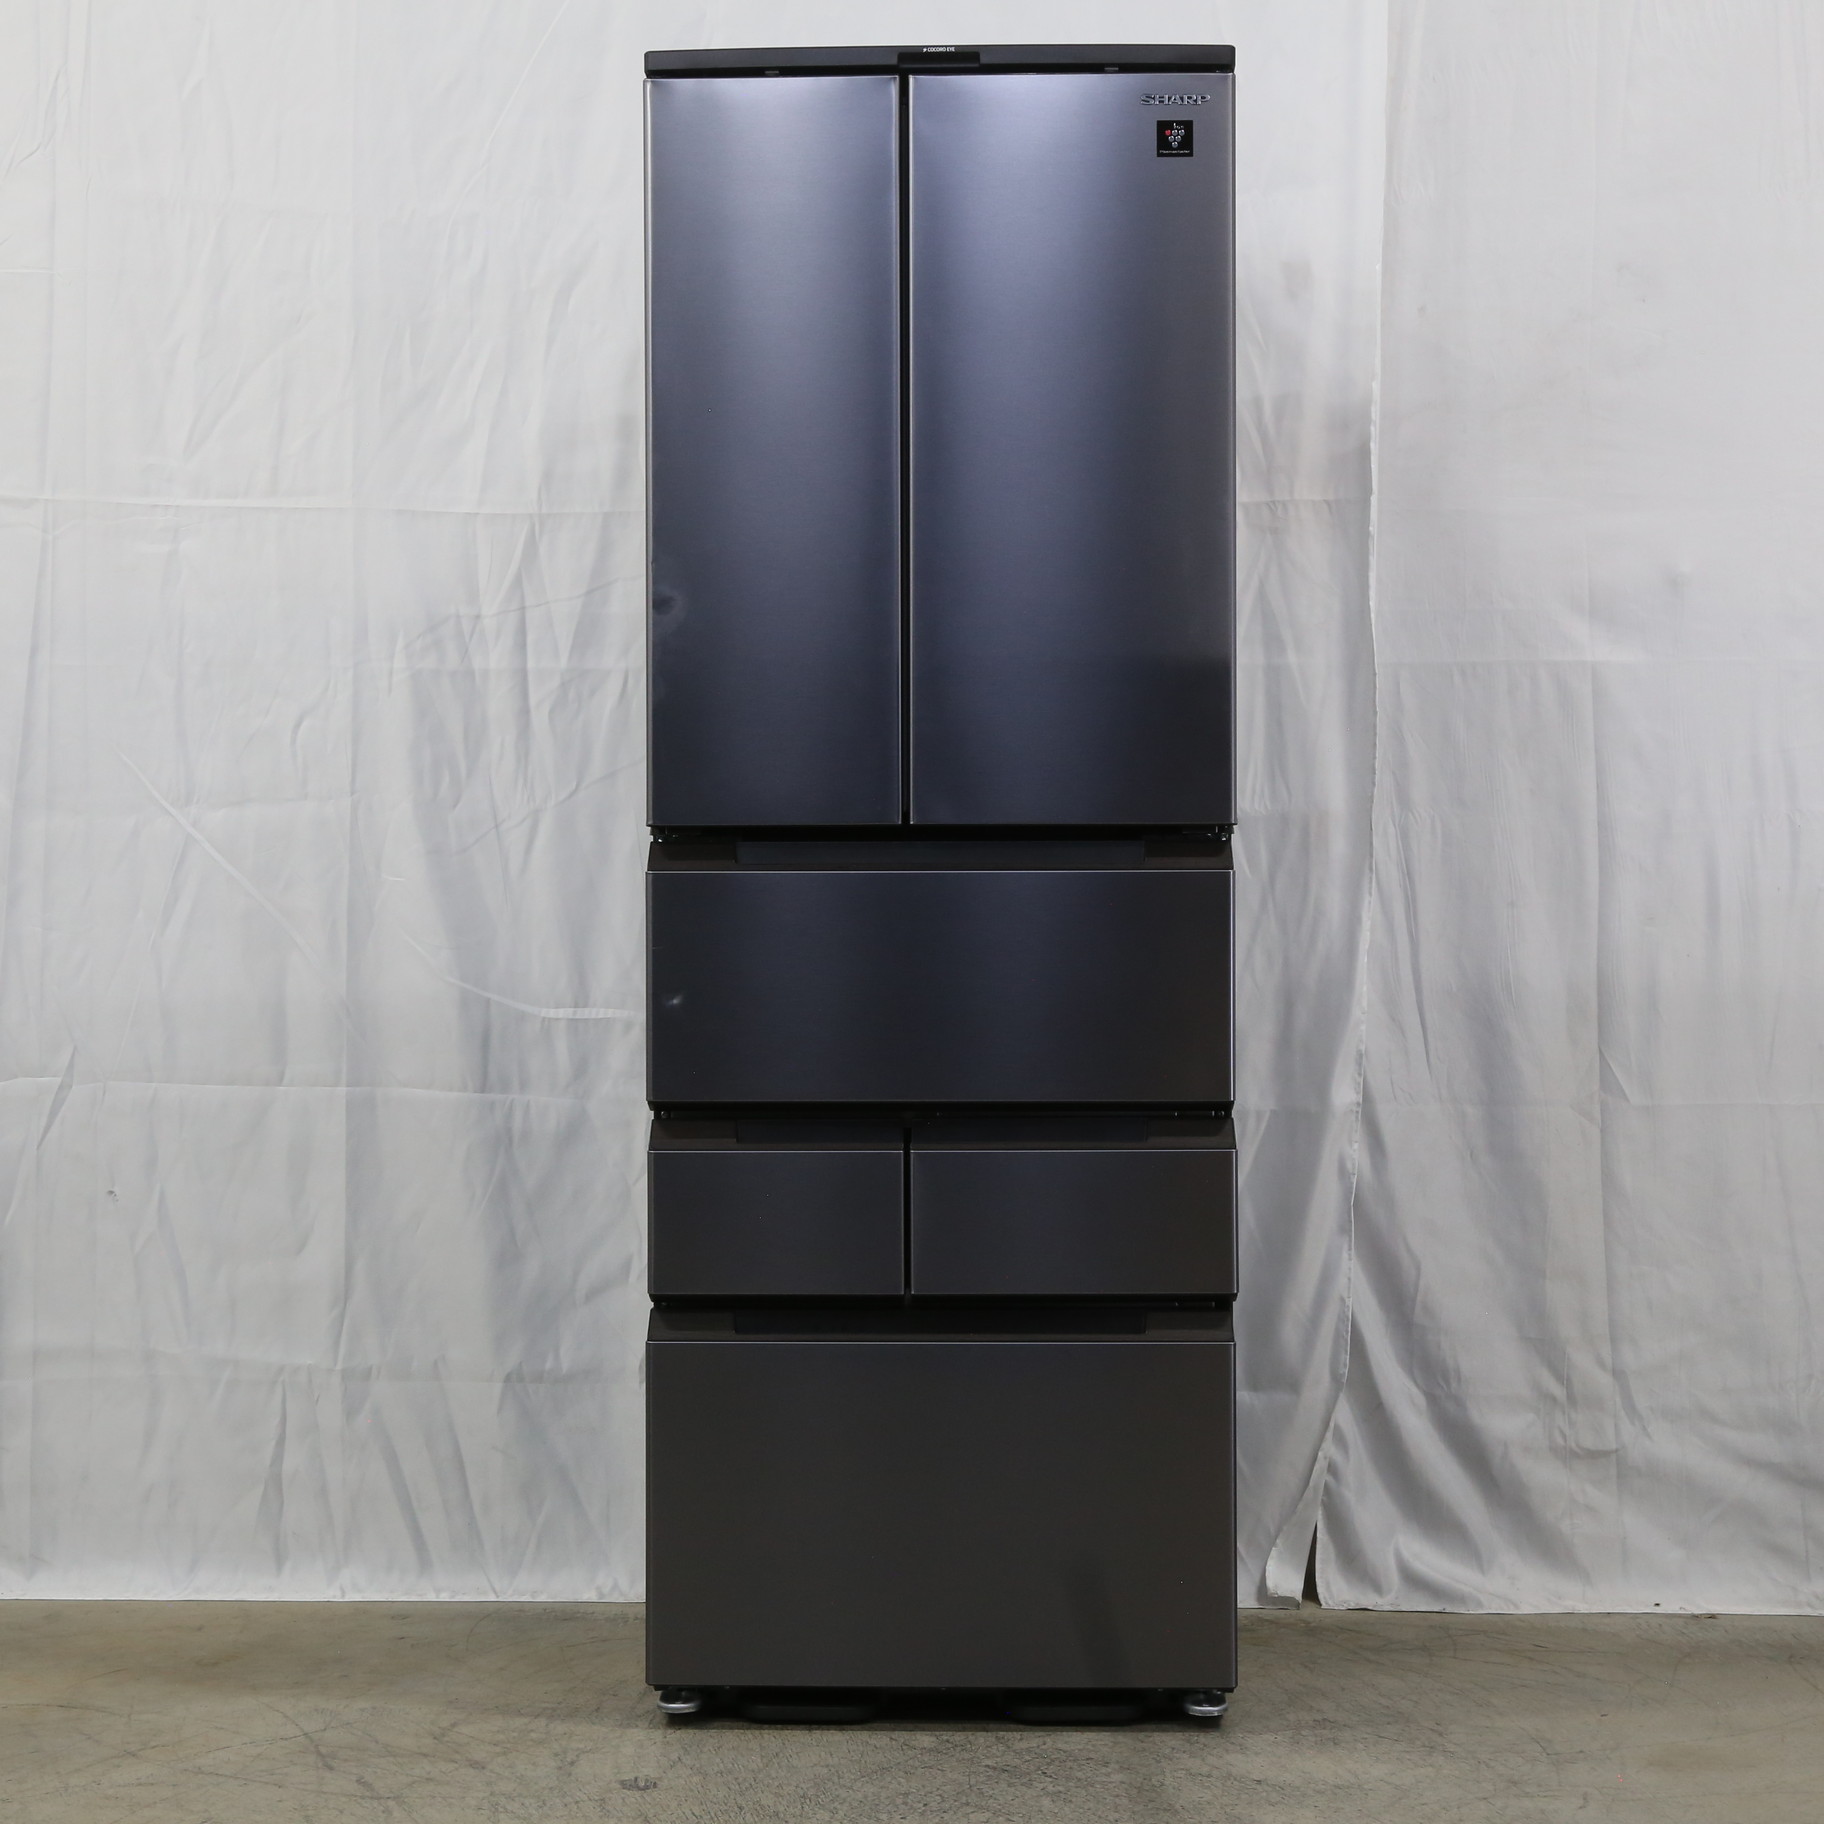 シャープ 冷蔵庫 SJ-MF46J-H 22年製 457L 動作確認済 美品定格内容積400L500L未満